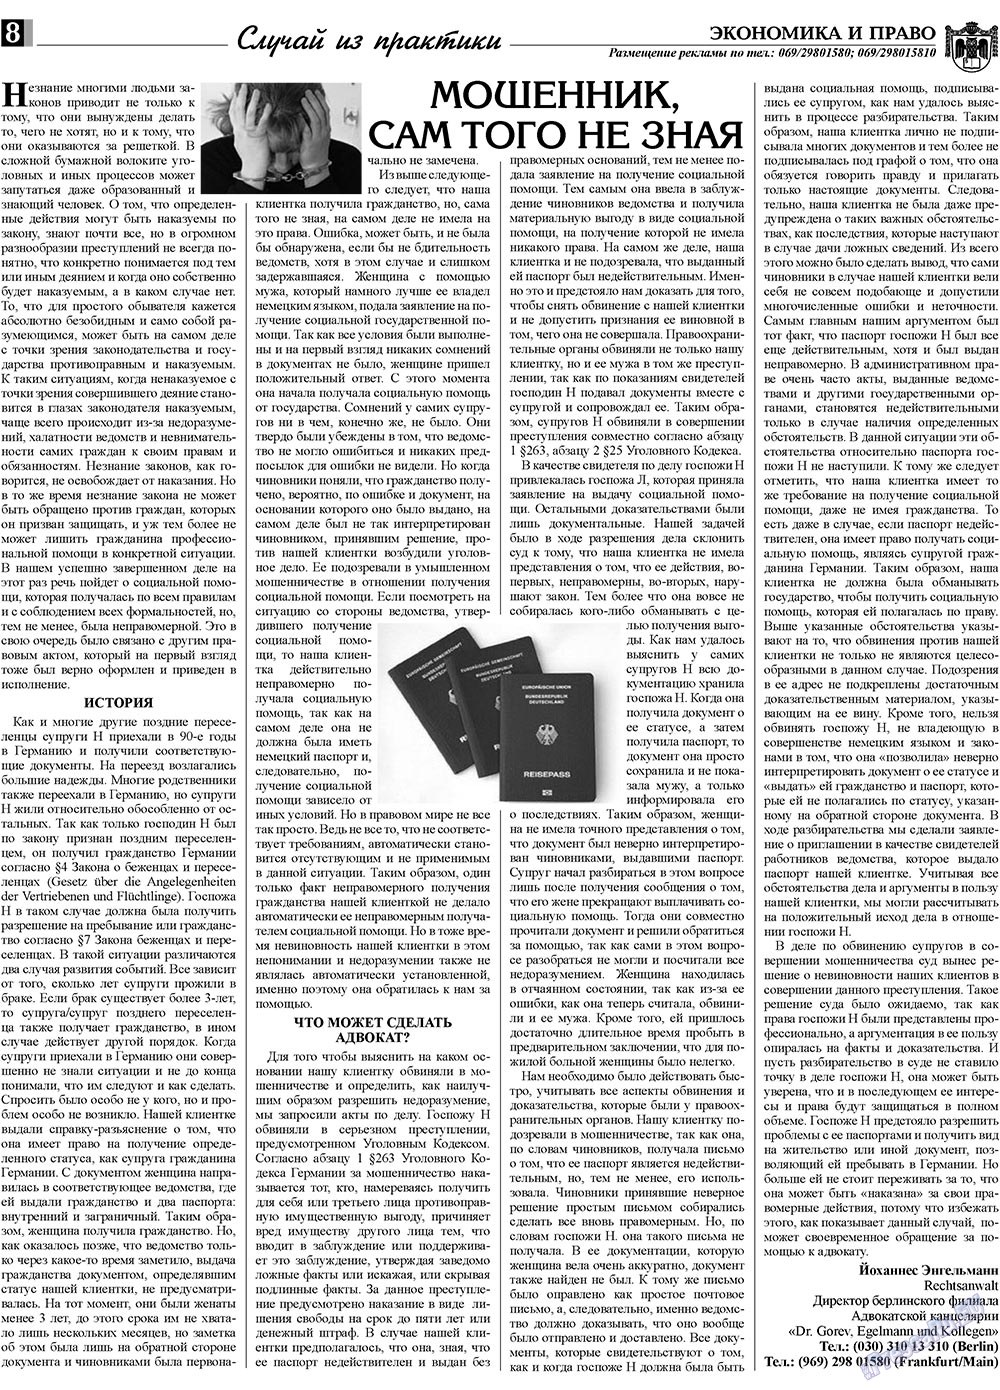 Экономика и право, газета. 2009 №3 стр.8